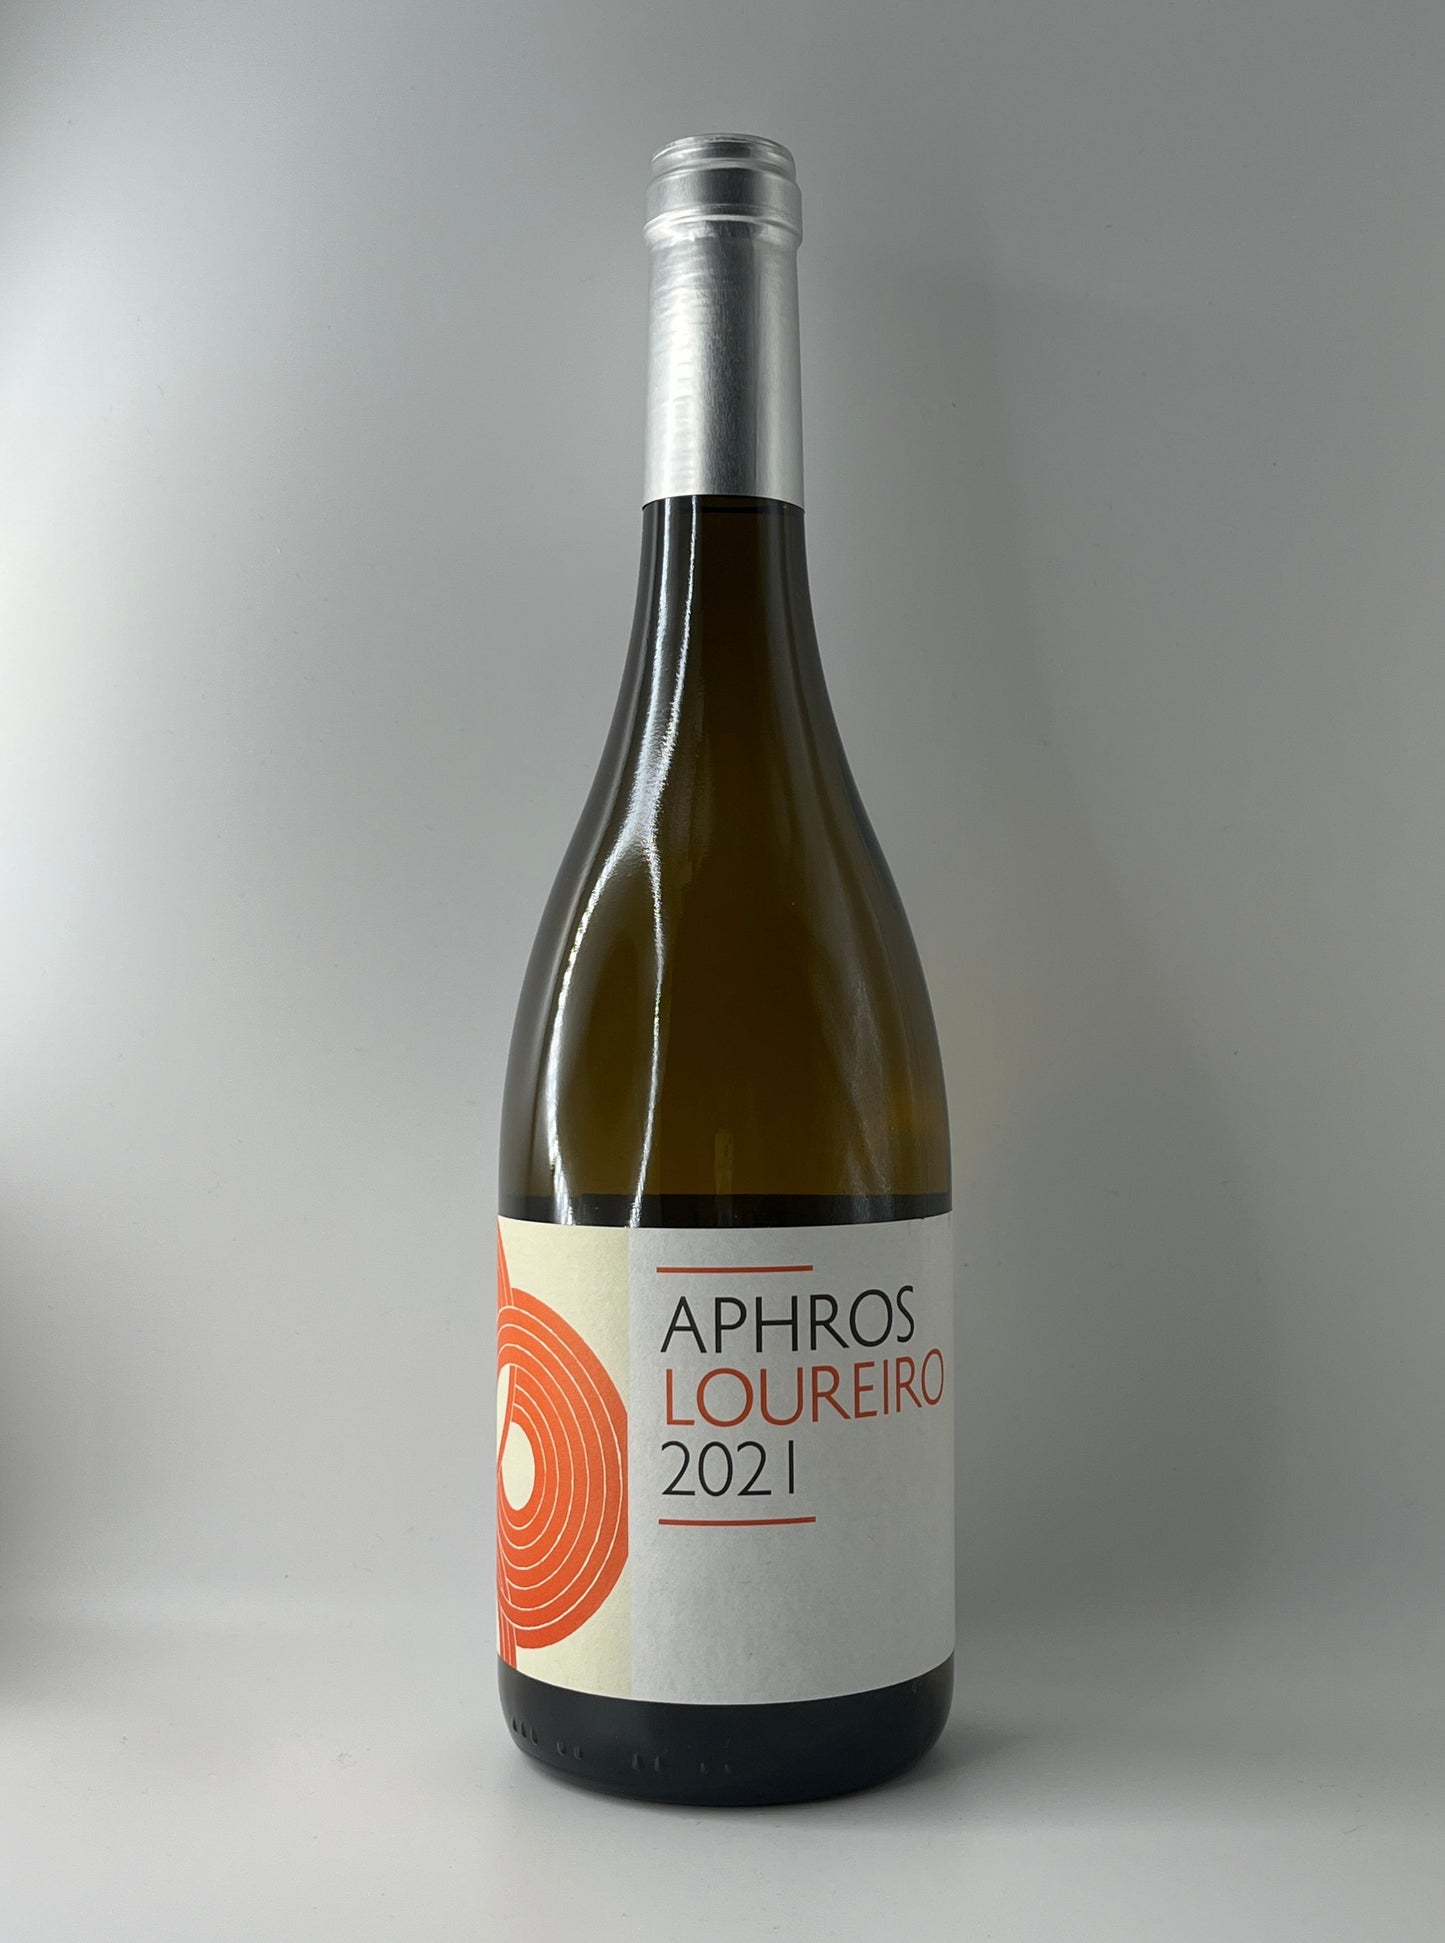 Aphros Wines, Loureiro Vinho Verde 2021 (Portugal)